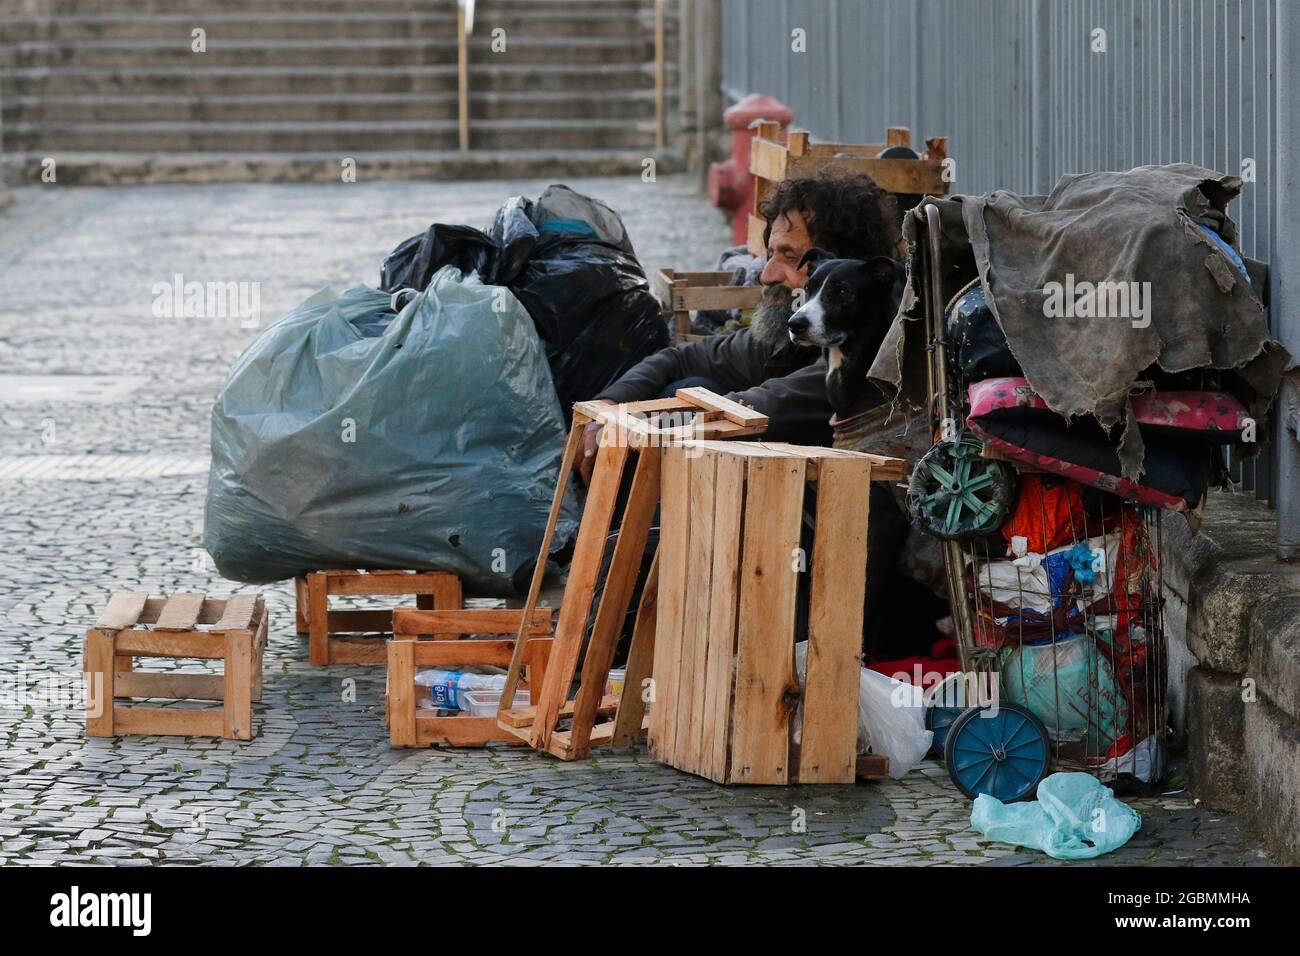 Uomo senza casa, mendicante vivere su un marciapiede durante la crisi economica in centro, in cerca di aiuto, affamato. Povertà situazione vulnerabile, problemi sociali in lat Foto Stock